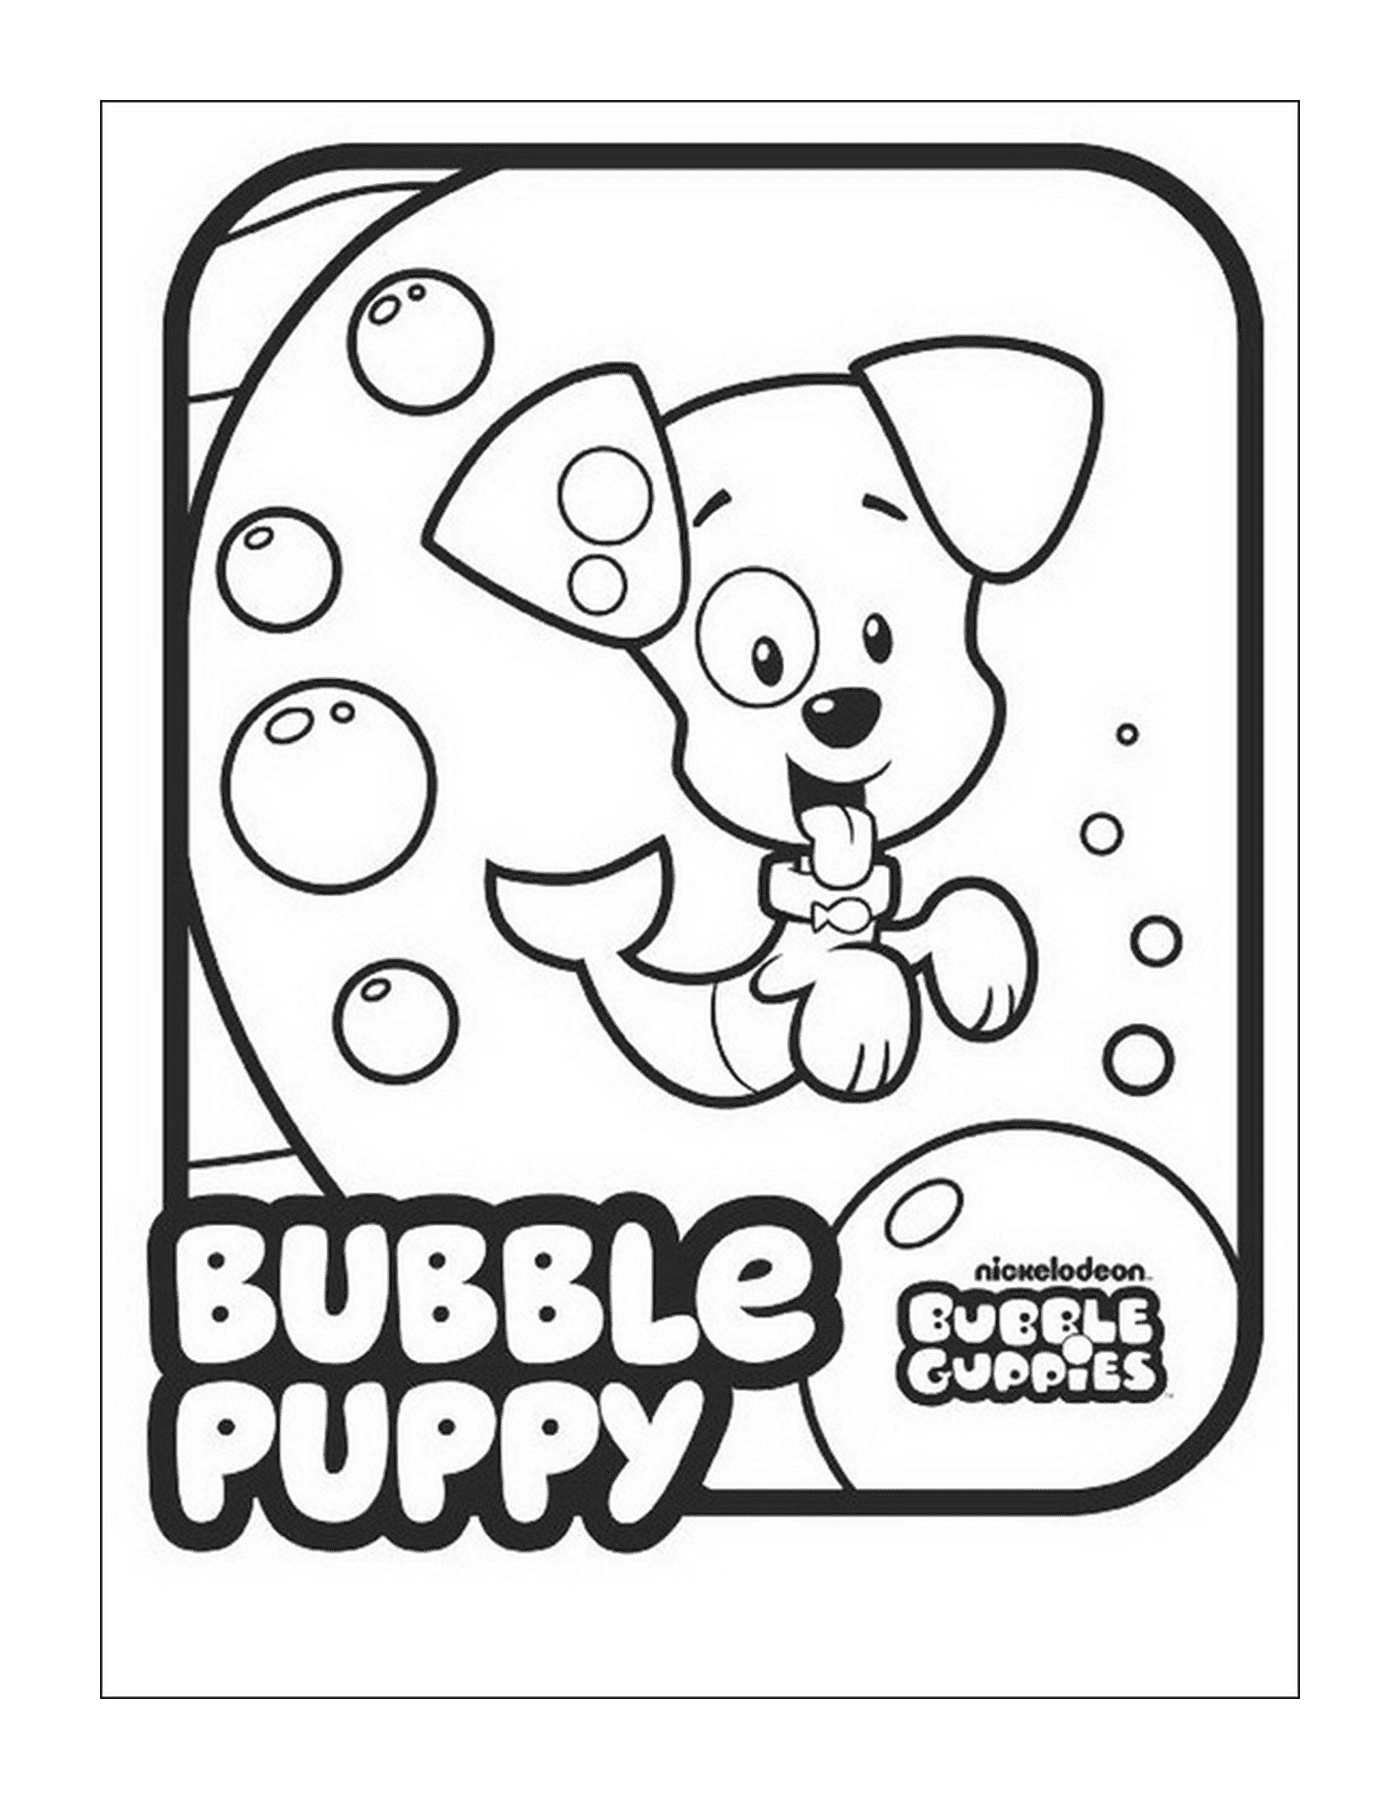  Una imagen de Bubble Guppies con una inscripción repetida 